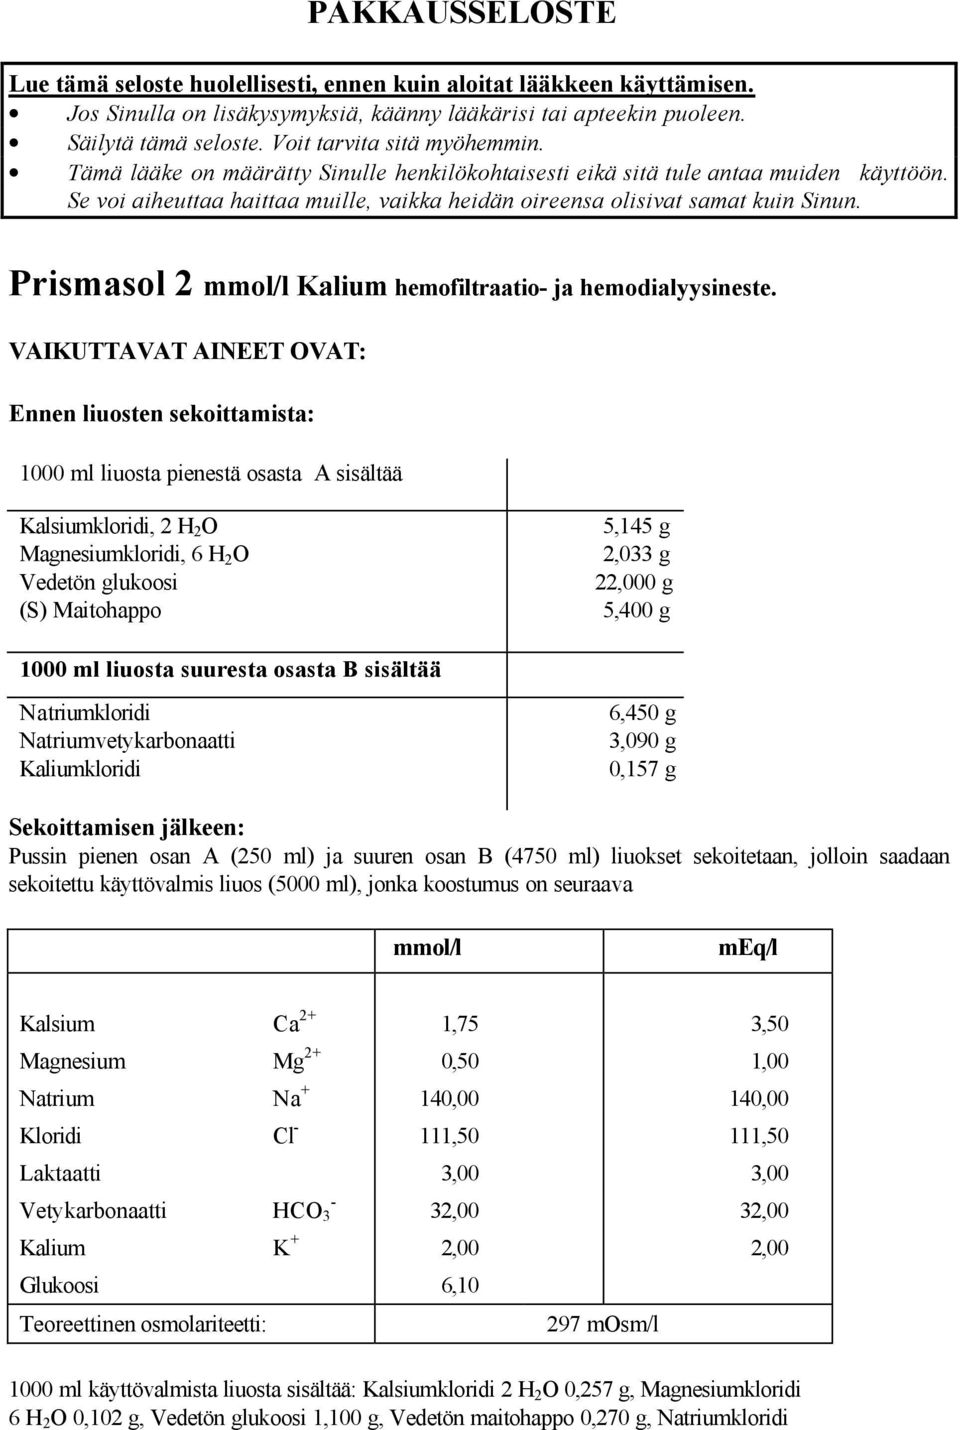 Prismasol 2 mmol/l Kalium hemofiltraatio- ja hemodialyysineste.